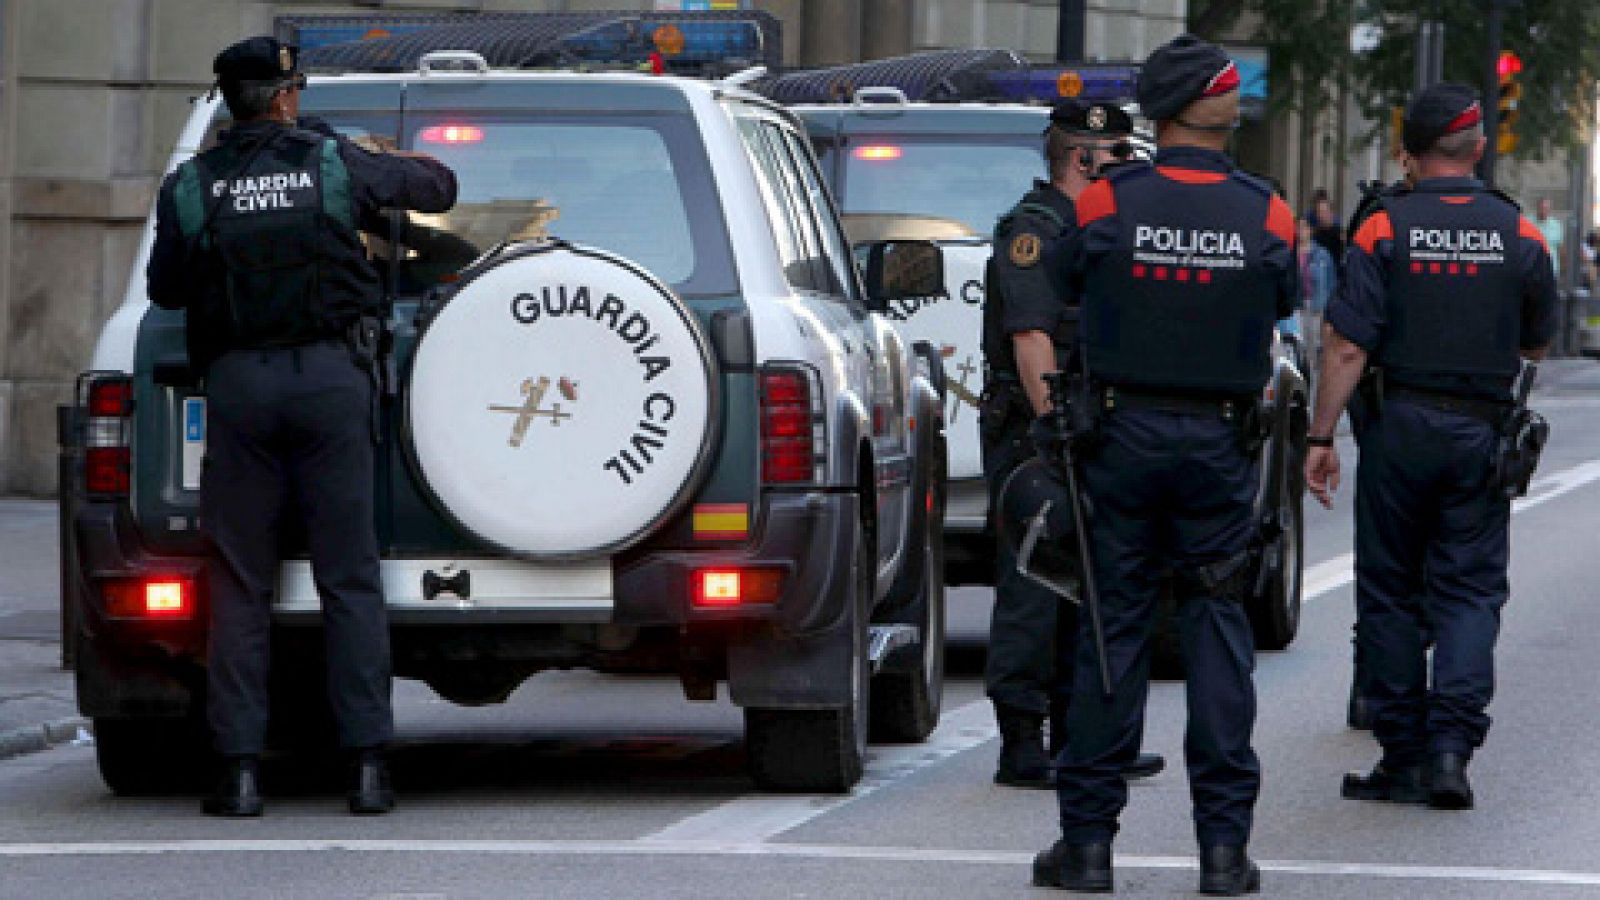 Interior asume la coordinación de las fuerzas de seguridad de Cataluña